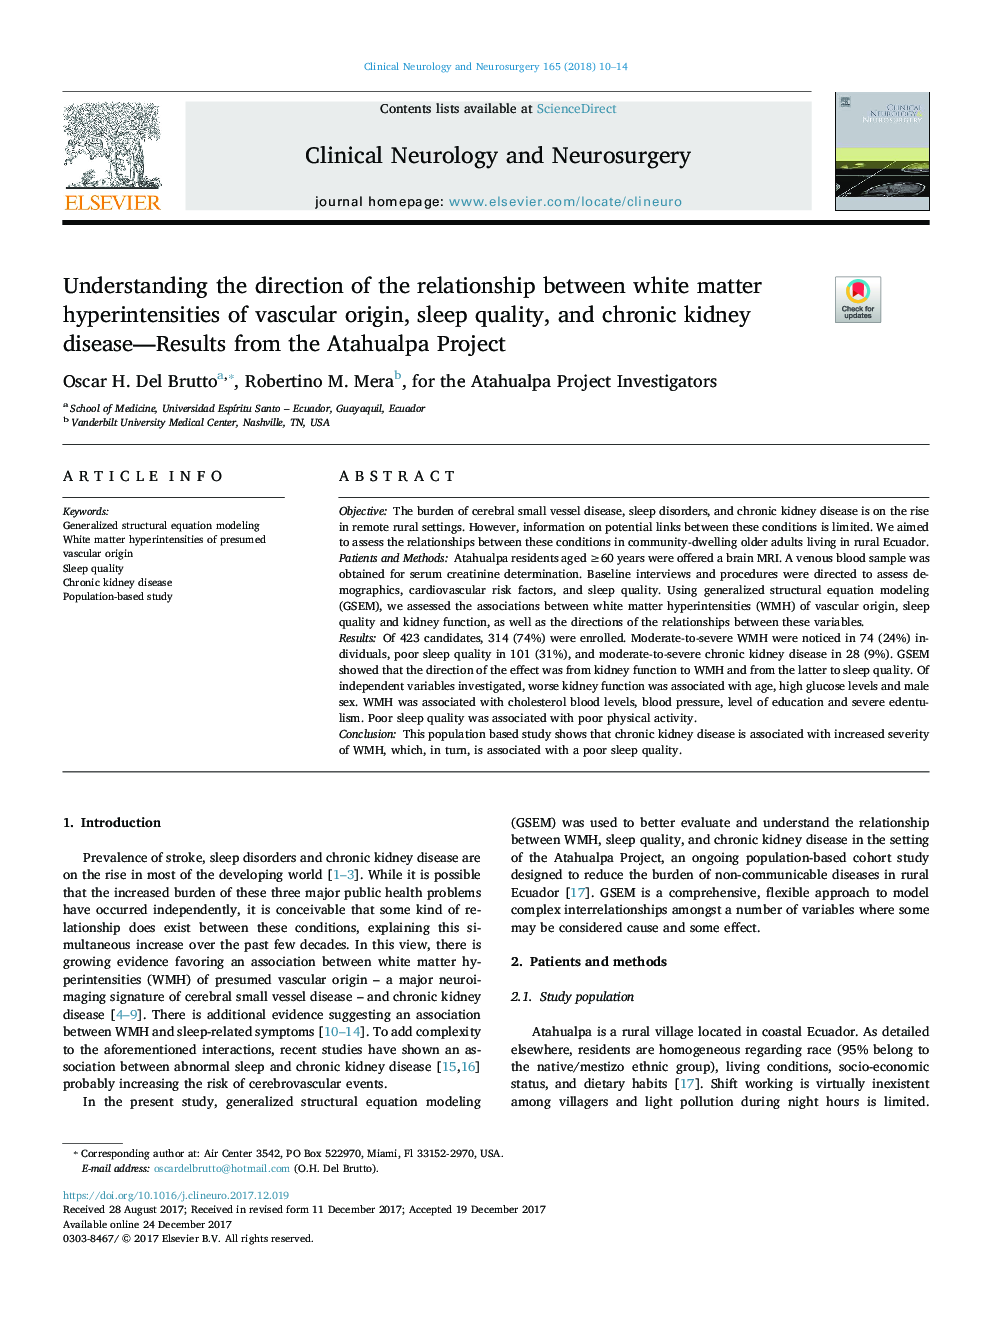 درک روابط رابطه بین افزایش شدید ماده سفید عروق، کیفیت خواب و بیماری مزمن کلیه - نتایج پروژه آتاوالپا 